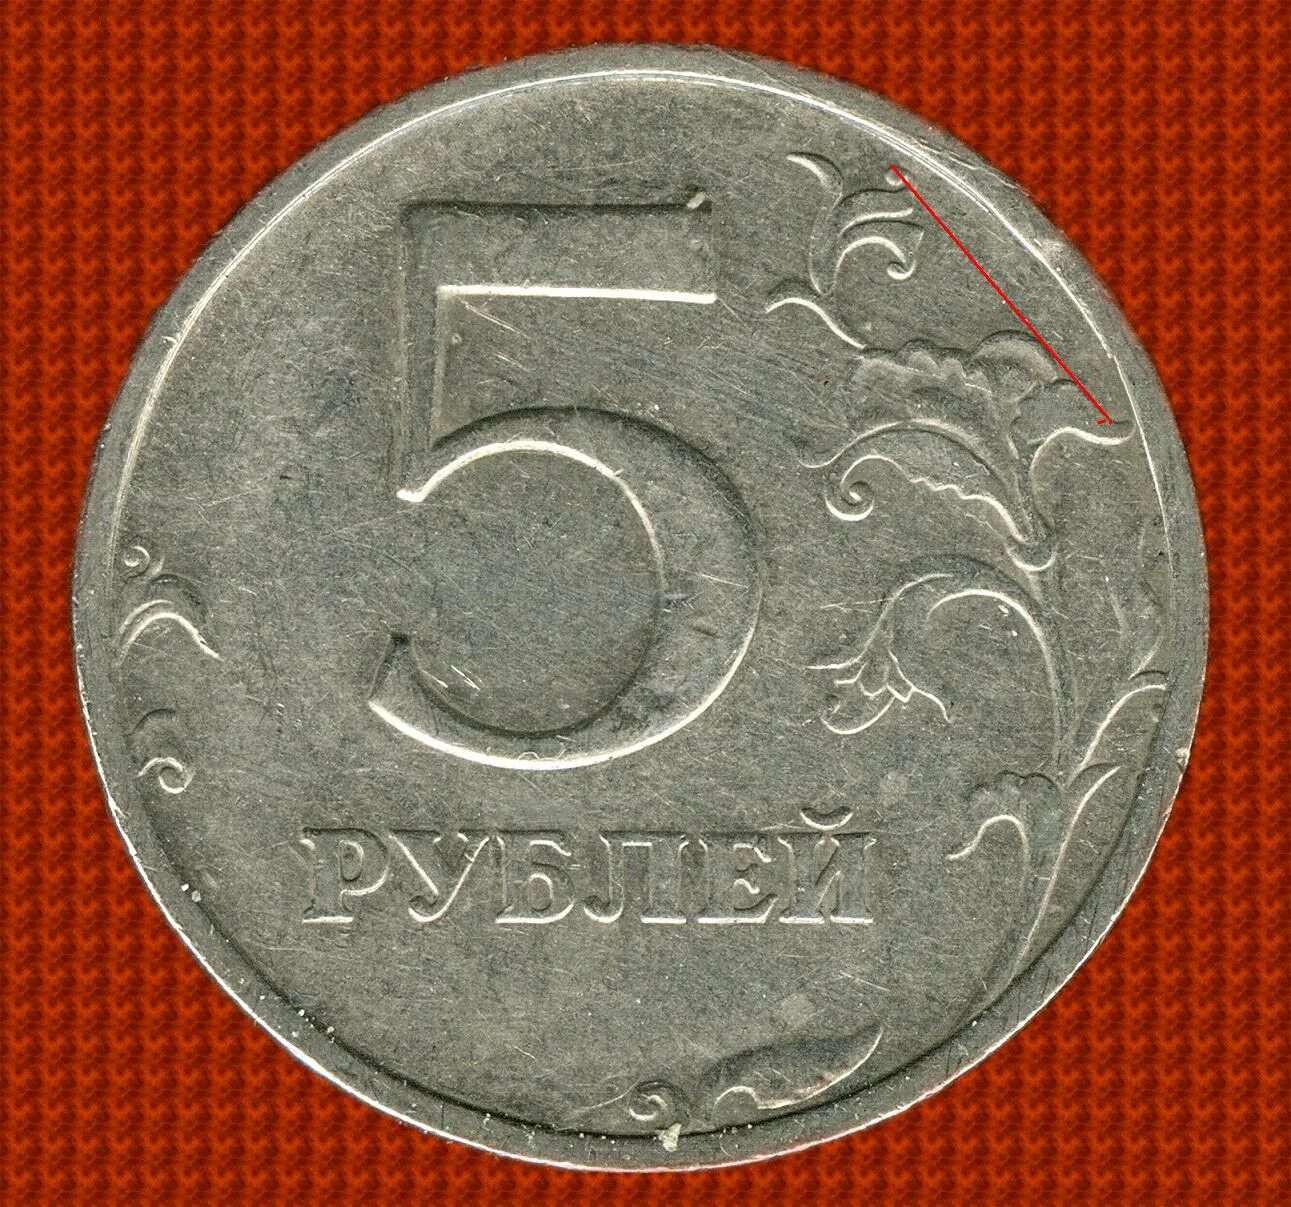 75 рублей 60. 5 Рублей 1998 ММД. 5 Рублей 1998 СПМД. 5 Рублей 1998 Московский монетный двор. Пять рублей.